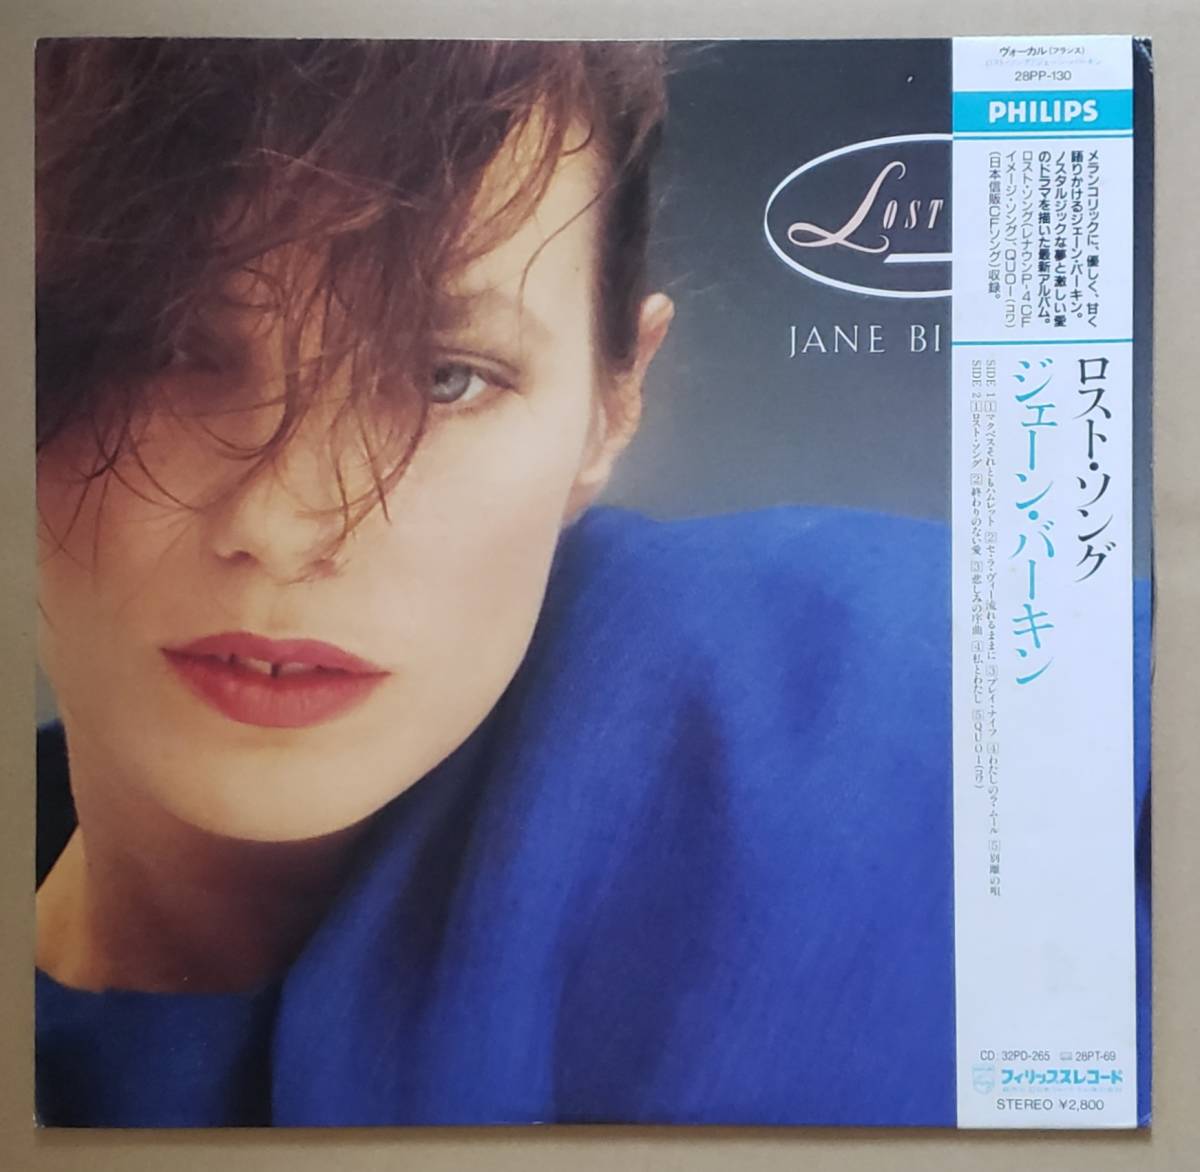 良盤帯付LP◎ジェーン・バーキン『ロスト・ソングス』28PP-130 日本フォノグラム 1987年 Jane Birkin / Lost Songs フレンチポップ_画像1